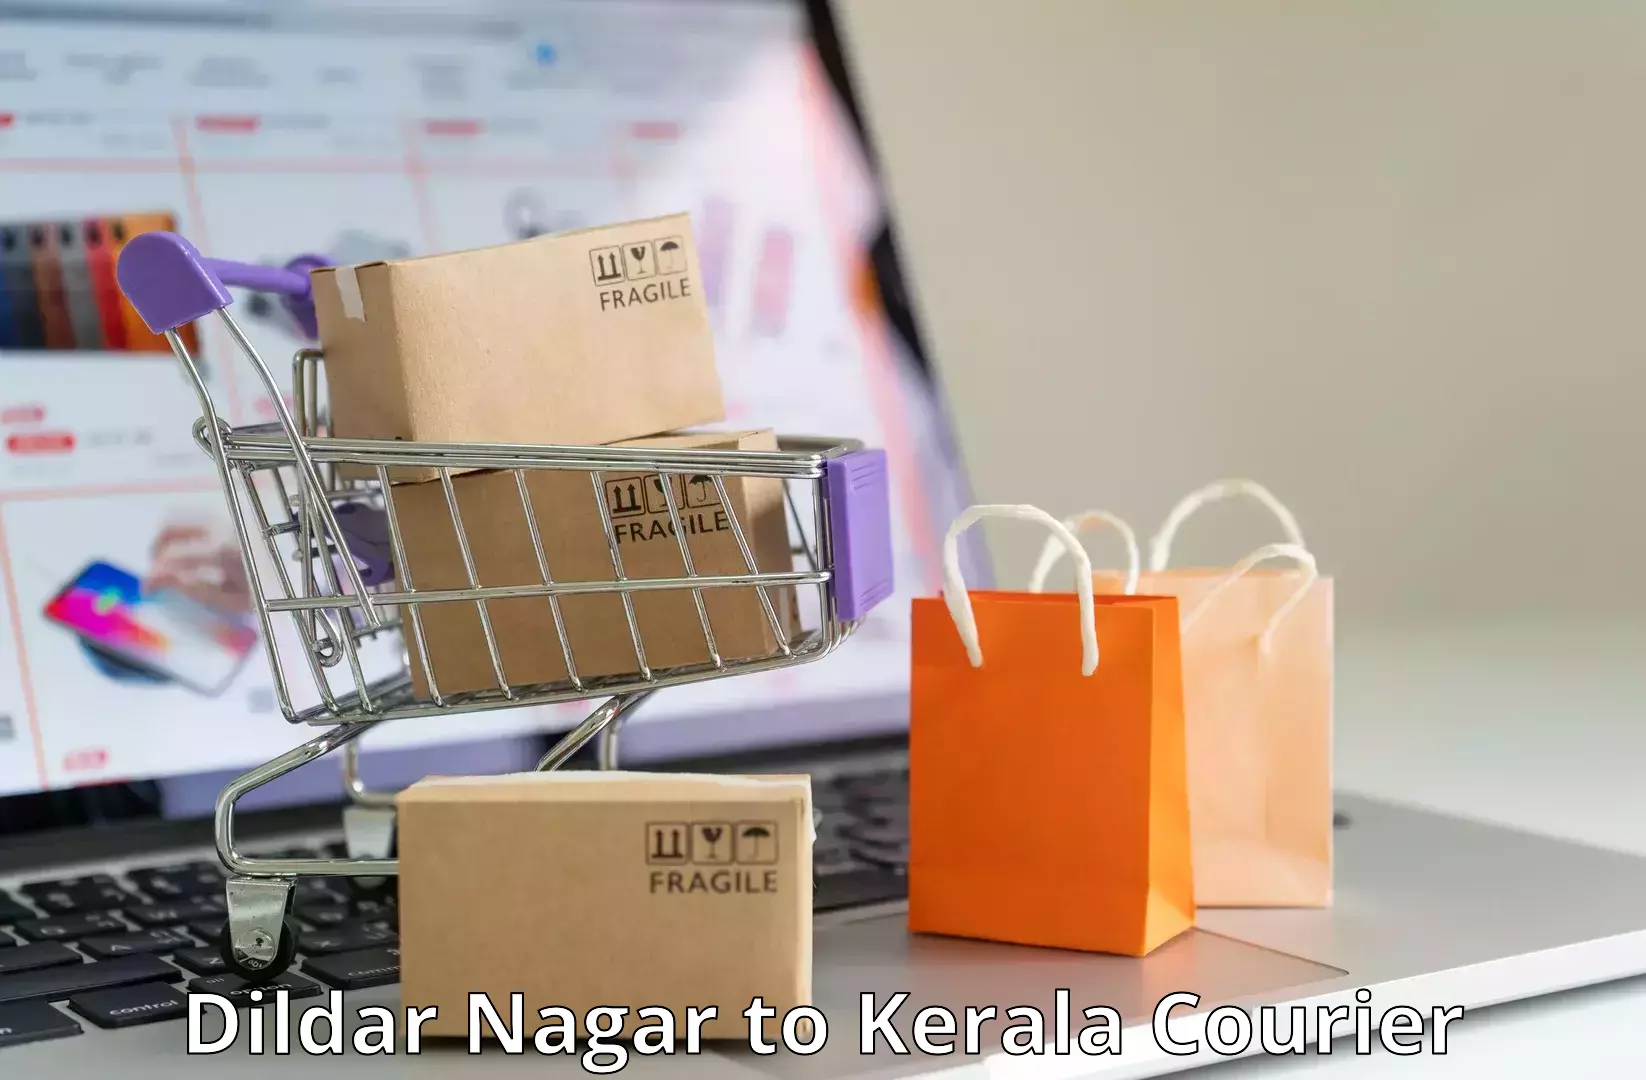 Residential courier service Dildar Nagar to Kalpetta